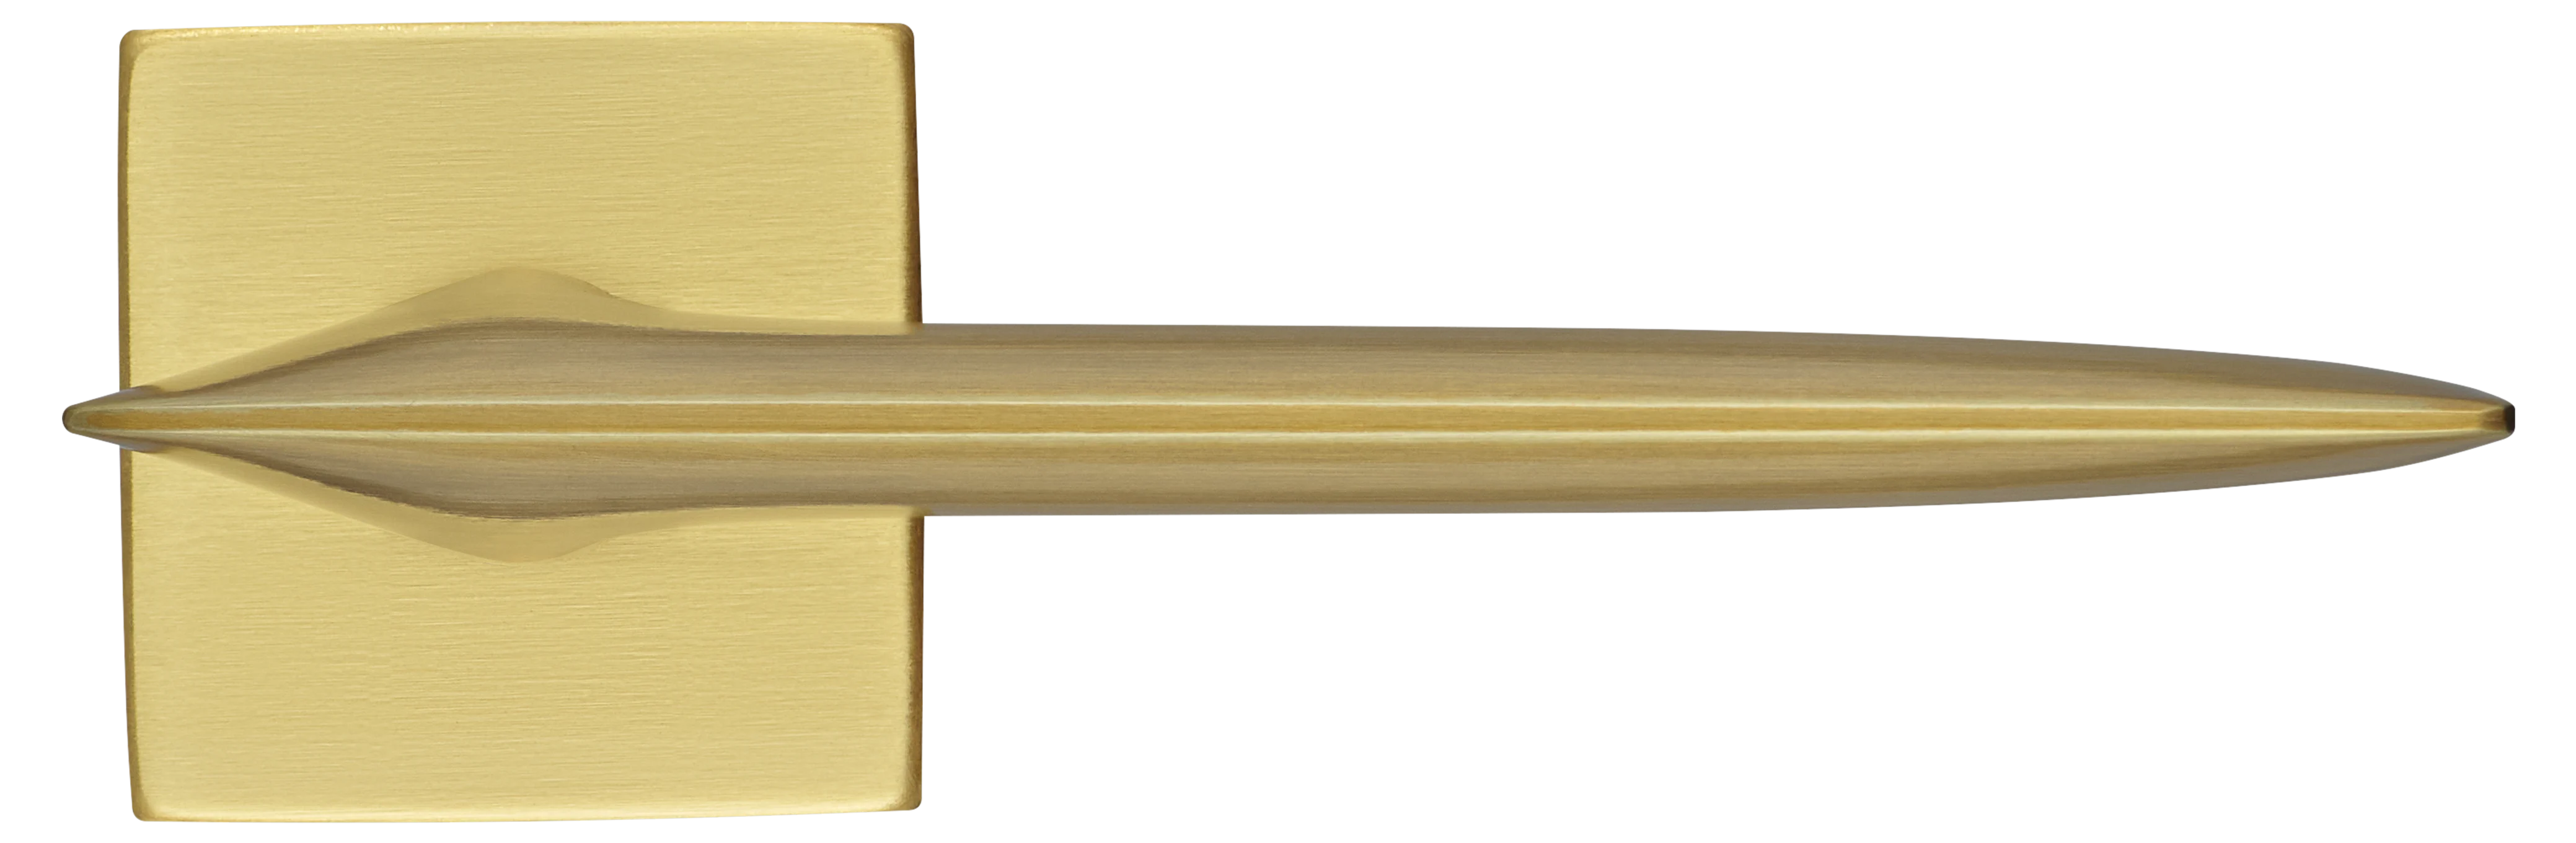 GALACTIC S5 OSA, ручка дверная, цвет -  матовое золото фото купить в Нижнем Новгороде